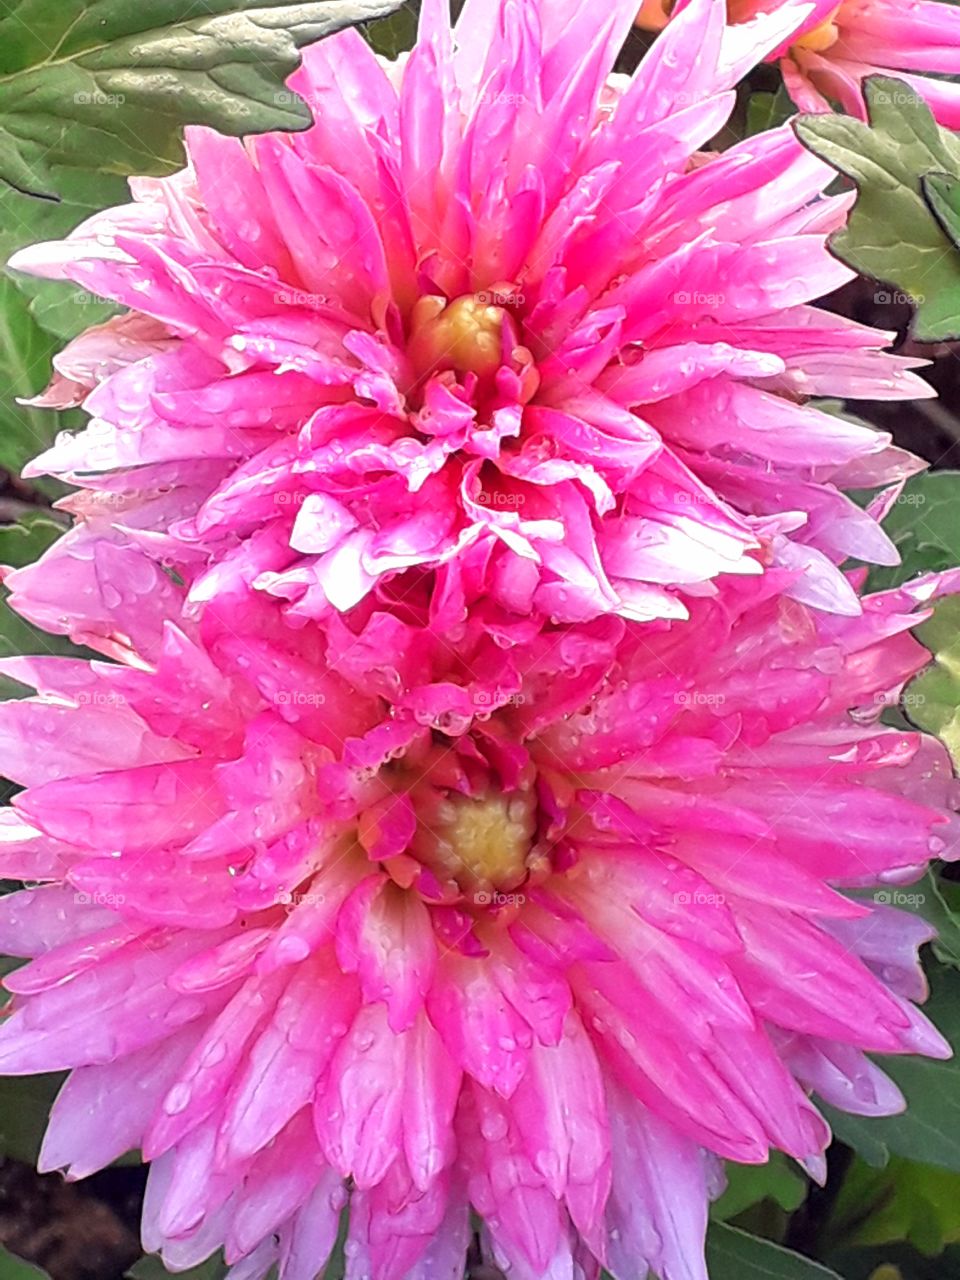 Twinned pink flowers